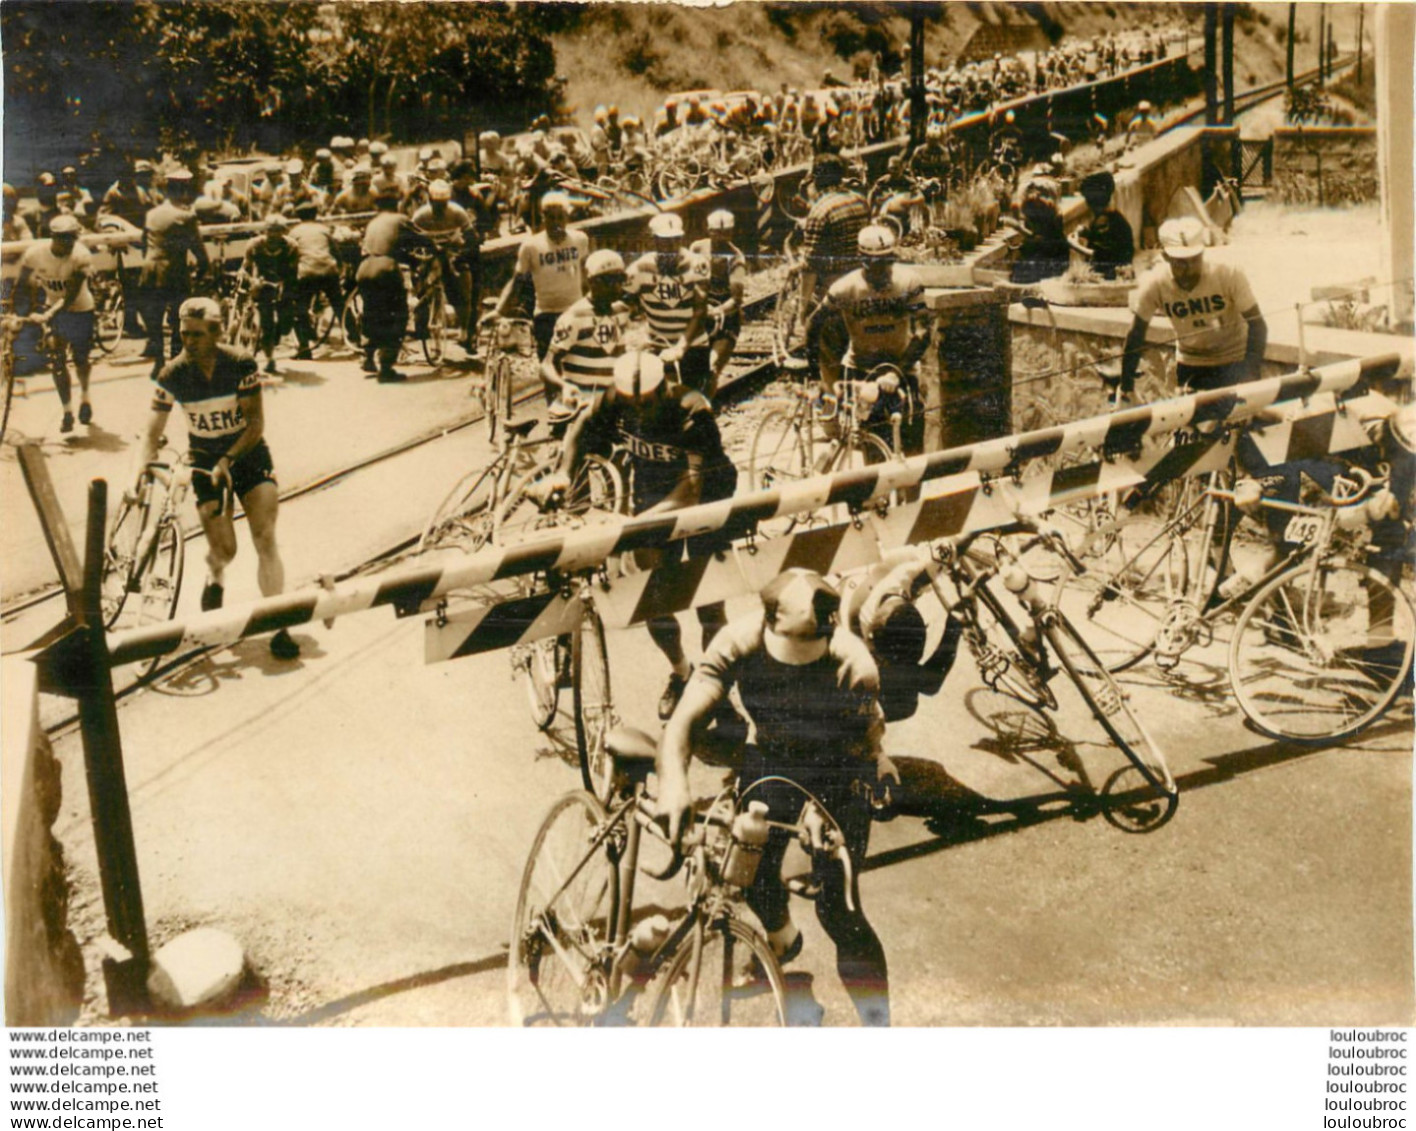 CYCLISME GIRO TOUR D'ITALIE 1961 COUREURS TRAVERSANT UN PASSAGE A NIVEAU PHOTO DE PRESSE 18 X 13 CM - Sports